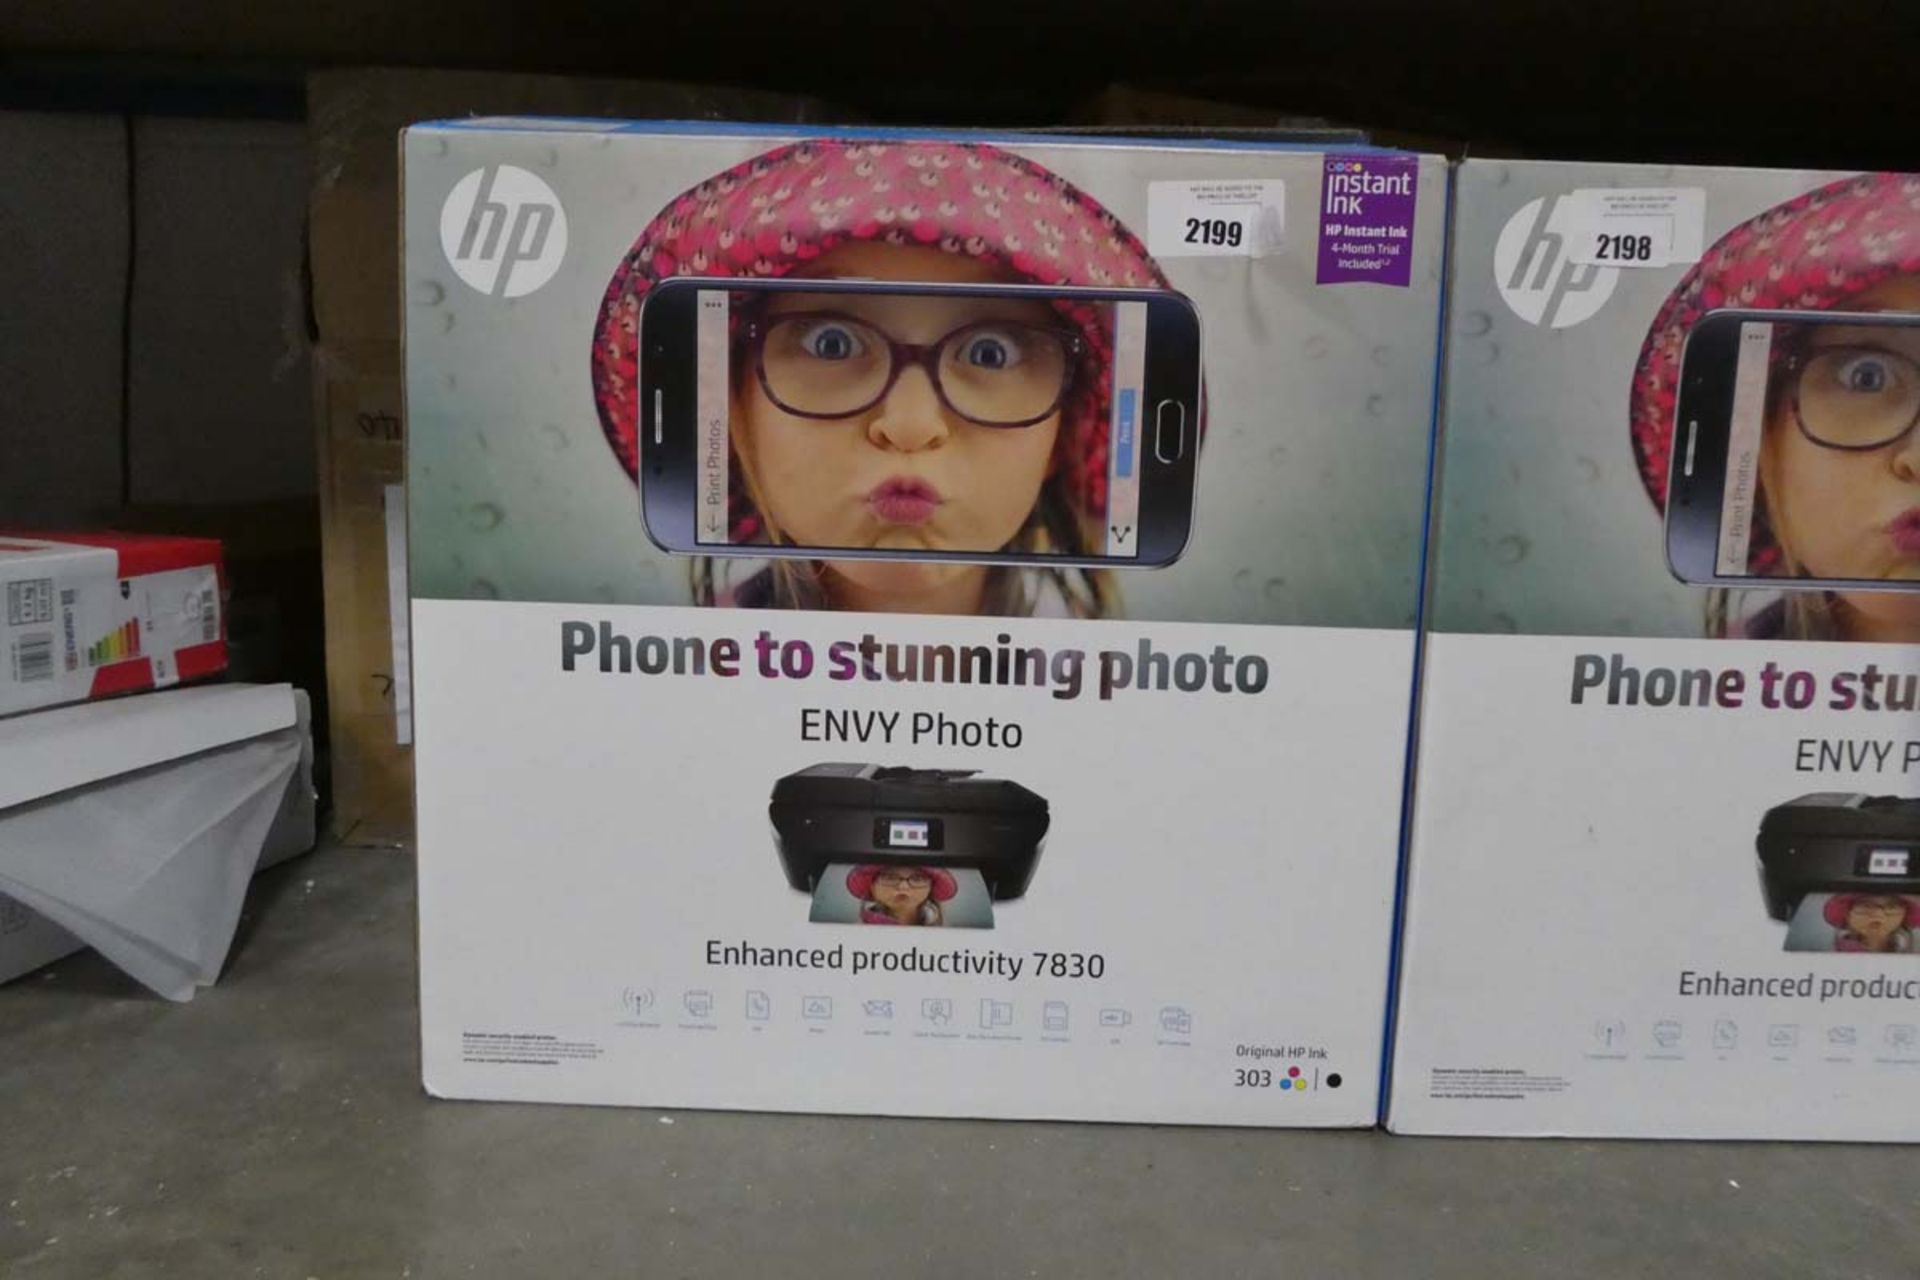 2199 - HP Envy Photo 7830 printer in box